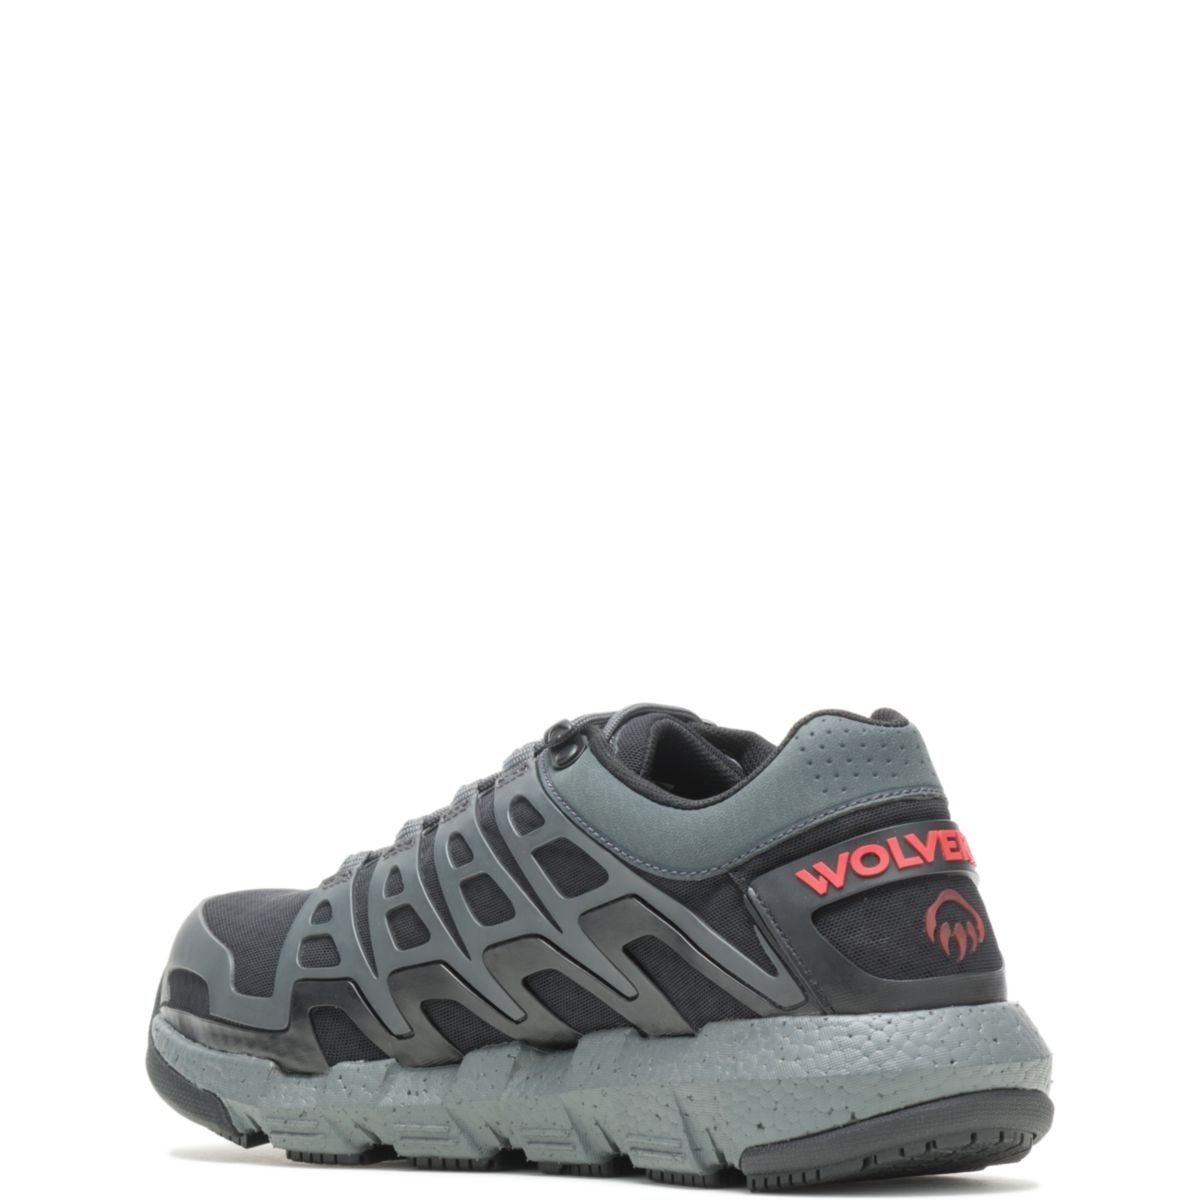 WOLVERINE Men's Rev Vent UltraSpringâ¢ DuraShocksÂ® CarbonMAXÂ® Composite Toe Work Shoe Charcoal - W211016 CHARCOAL - CHARCOAL, 7 X-Wide